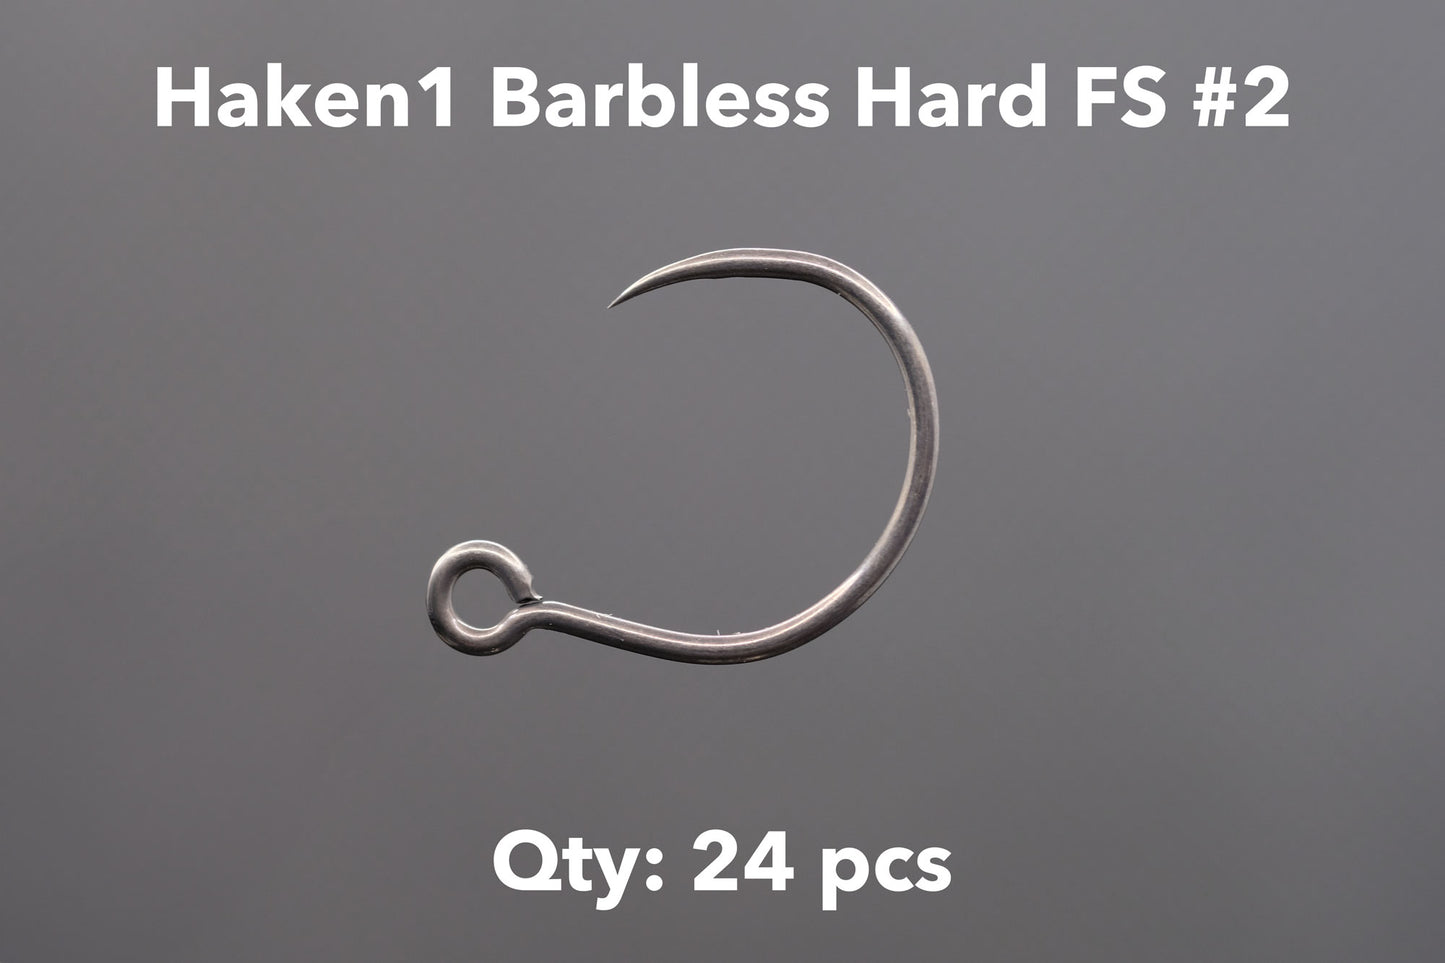 Haken1 Barbless Hard 1000円パック